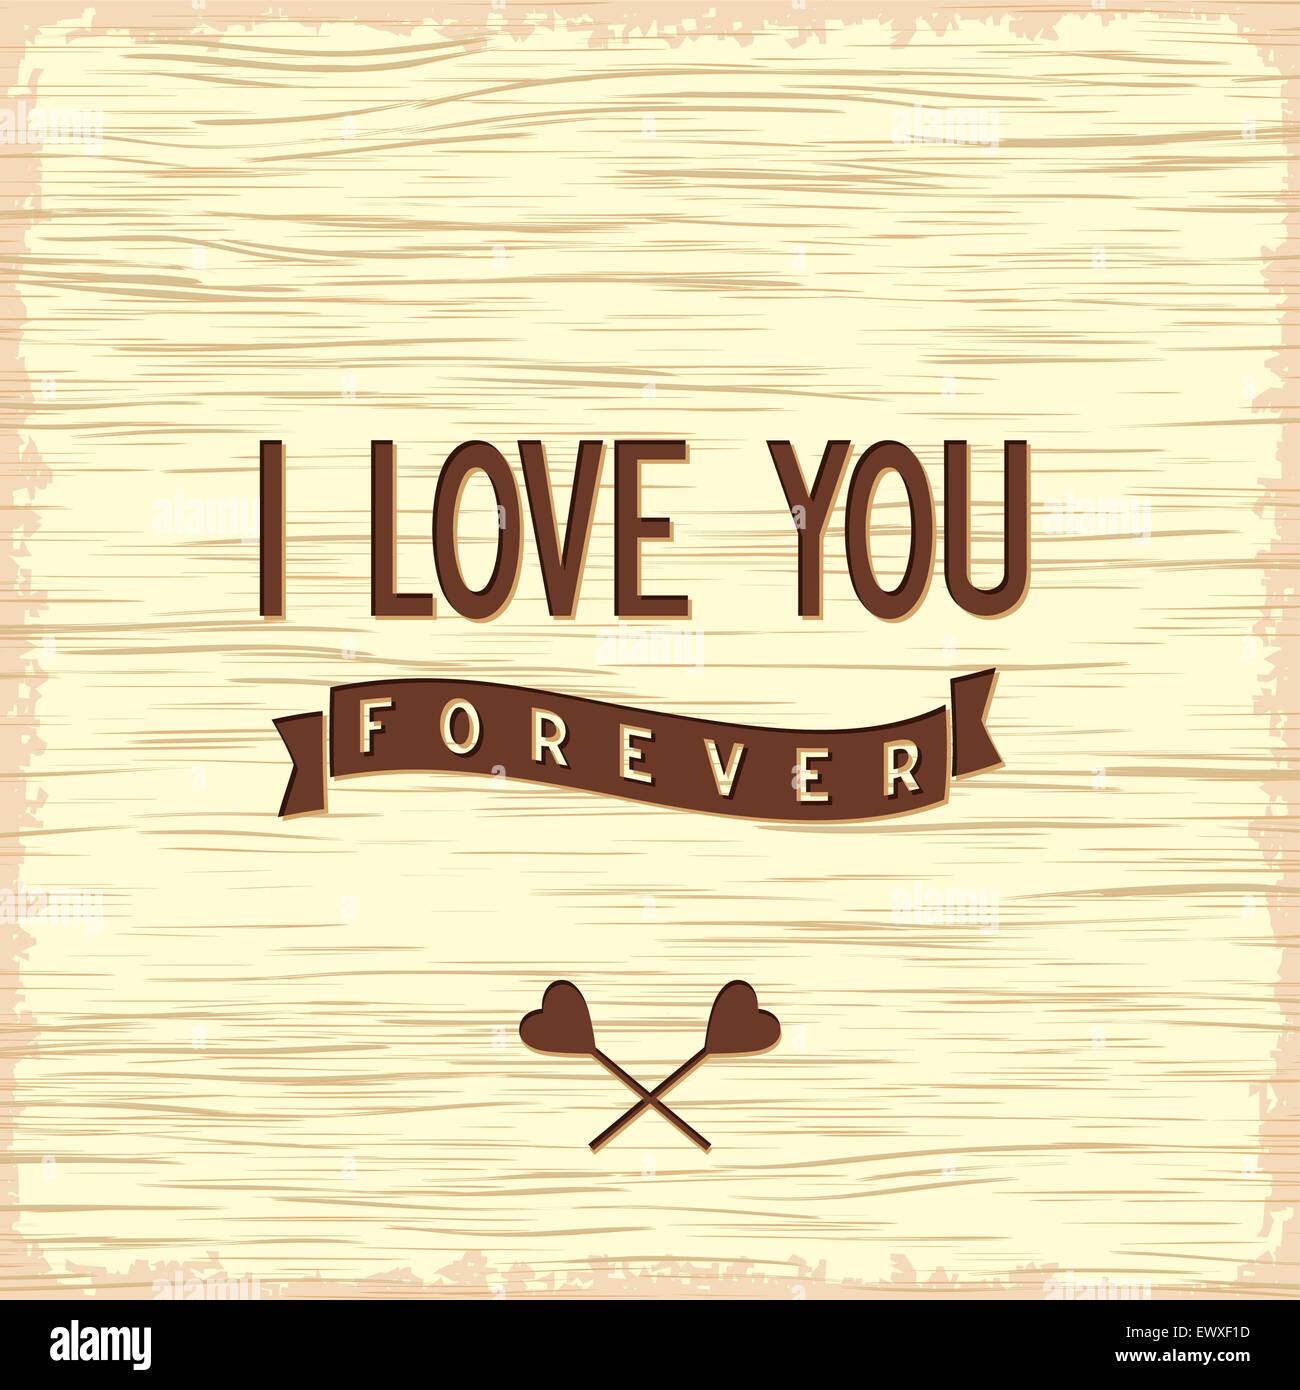 I Love You Forever Imagenes De Stock I Love You Forever Fotos De